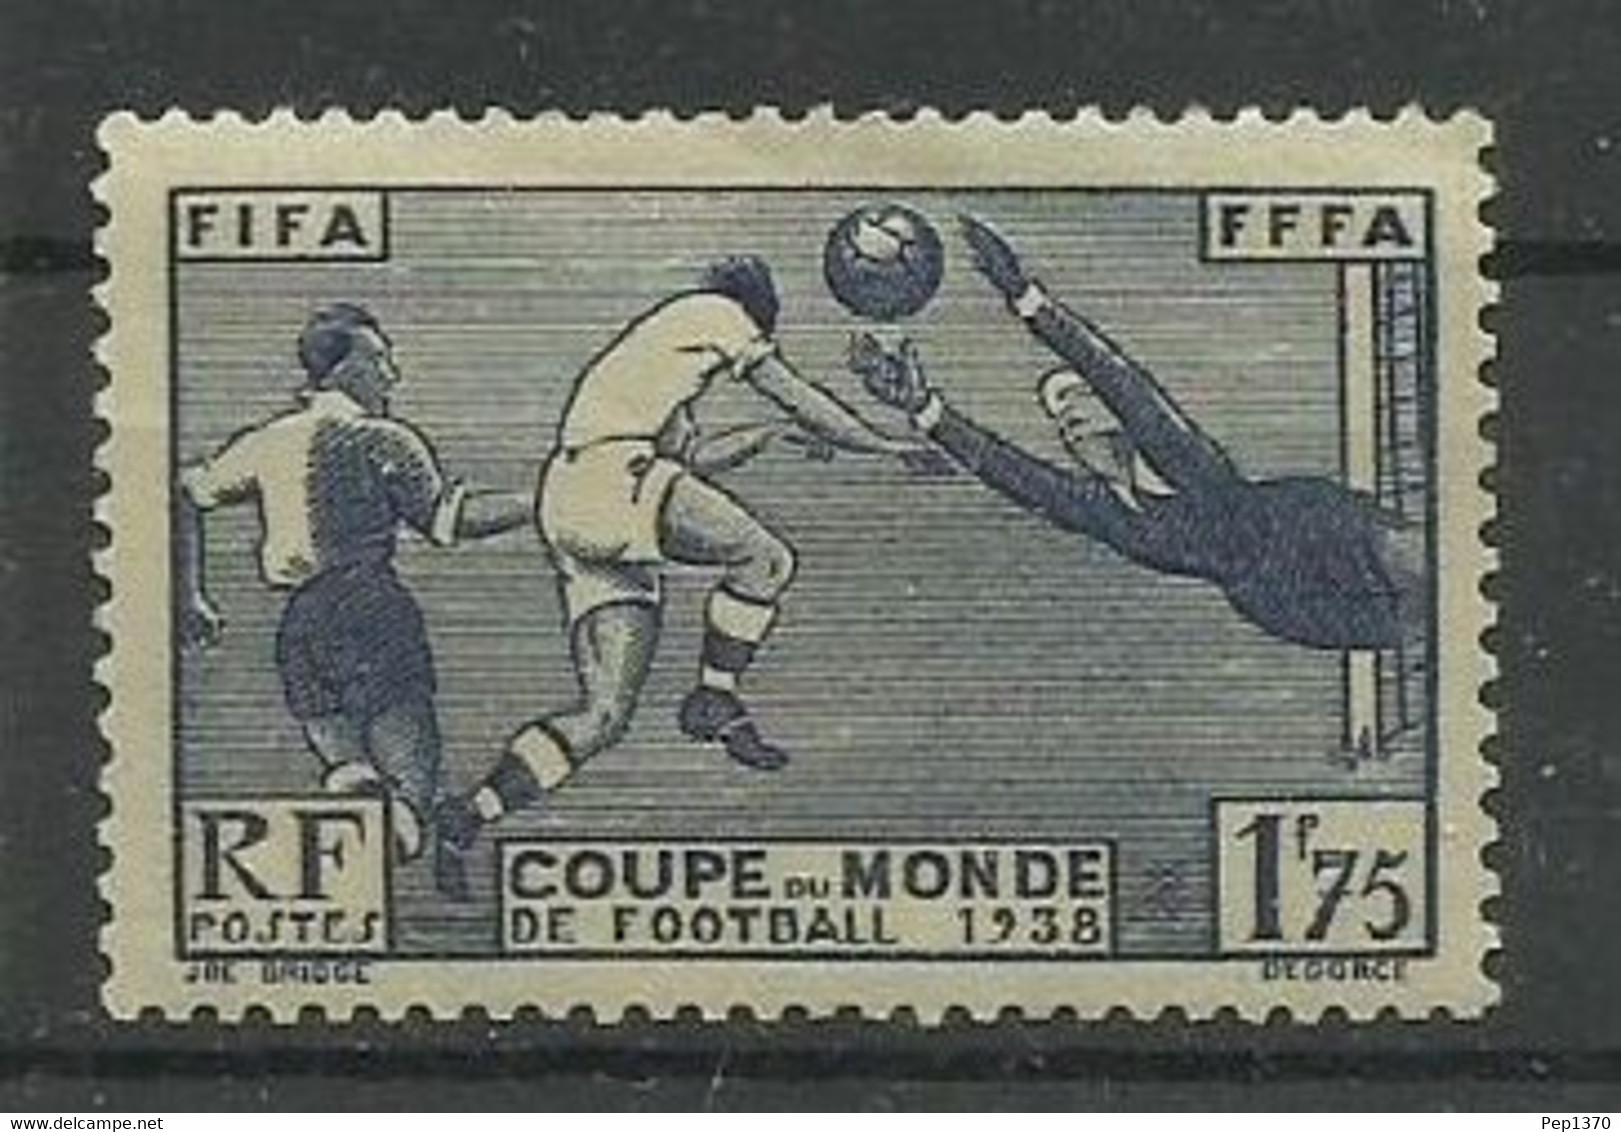 FRANCIA 1938 - CAMPEONATO DEL MUNDO DE FUTBOL FRANCIA 1938 - YVERT 396* - 1938 – Francia